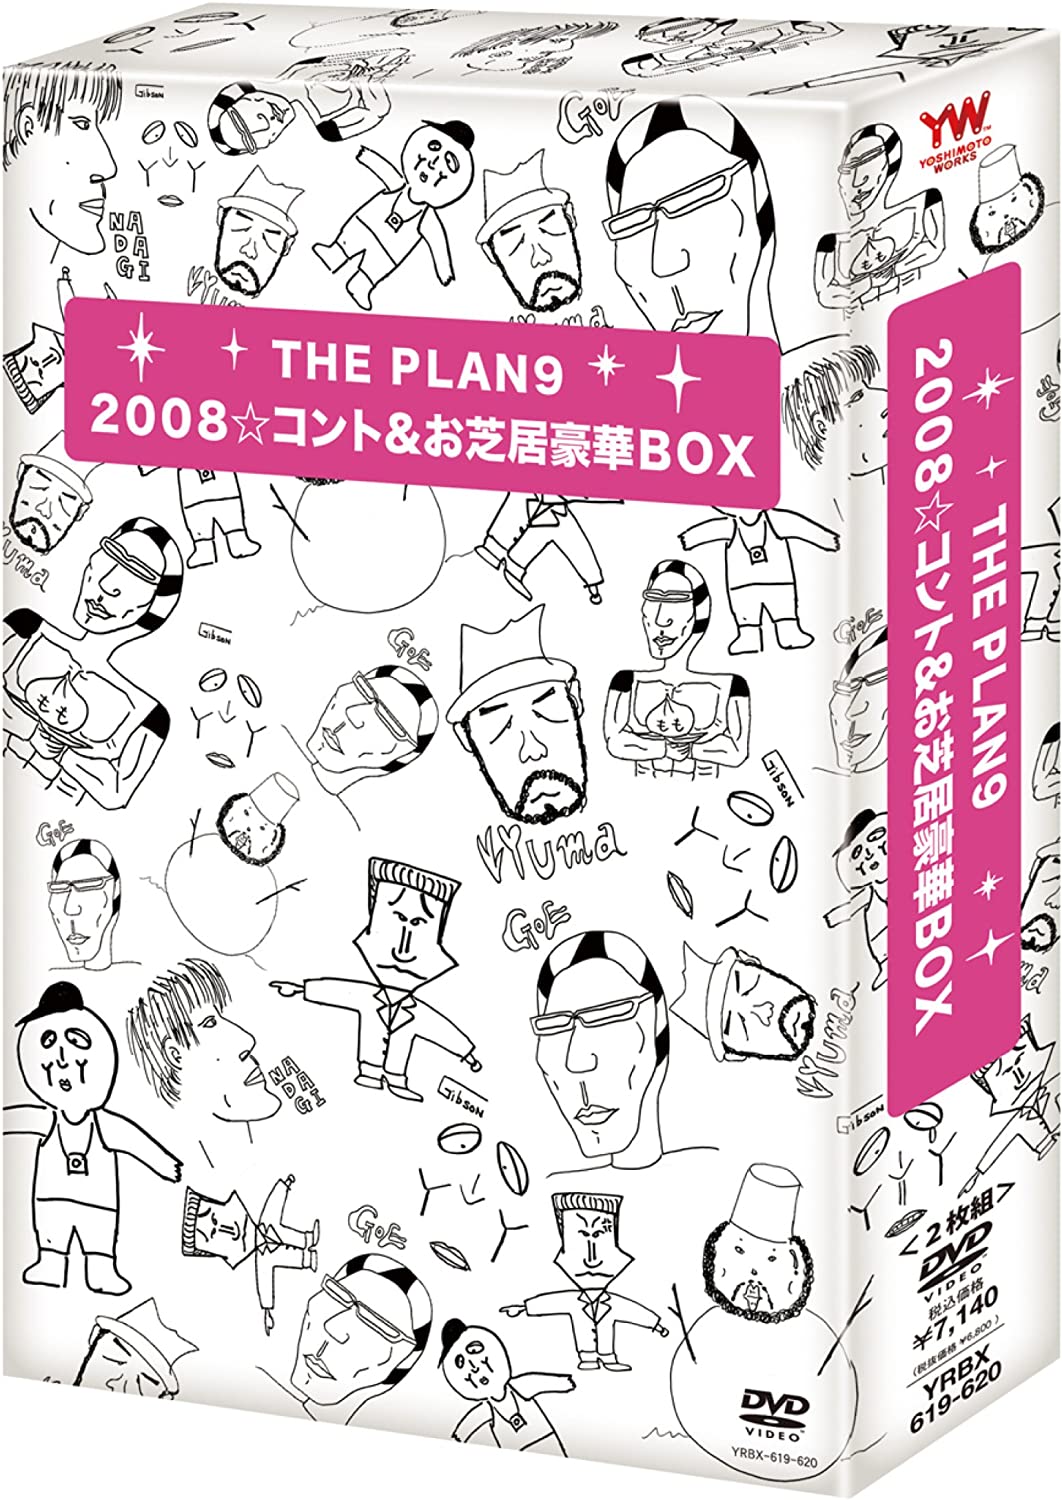 2008Rg&ŋBOX [DVD]